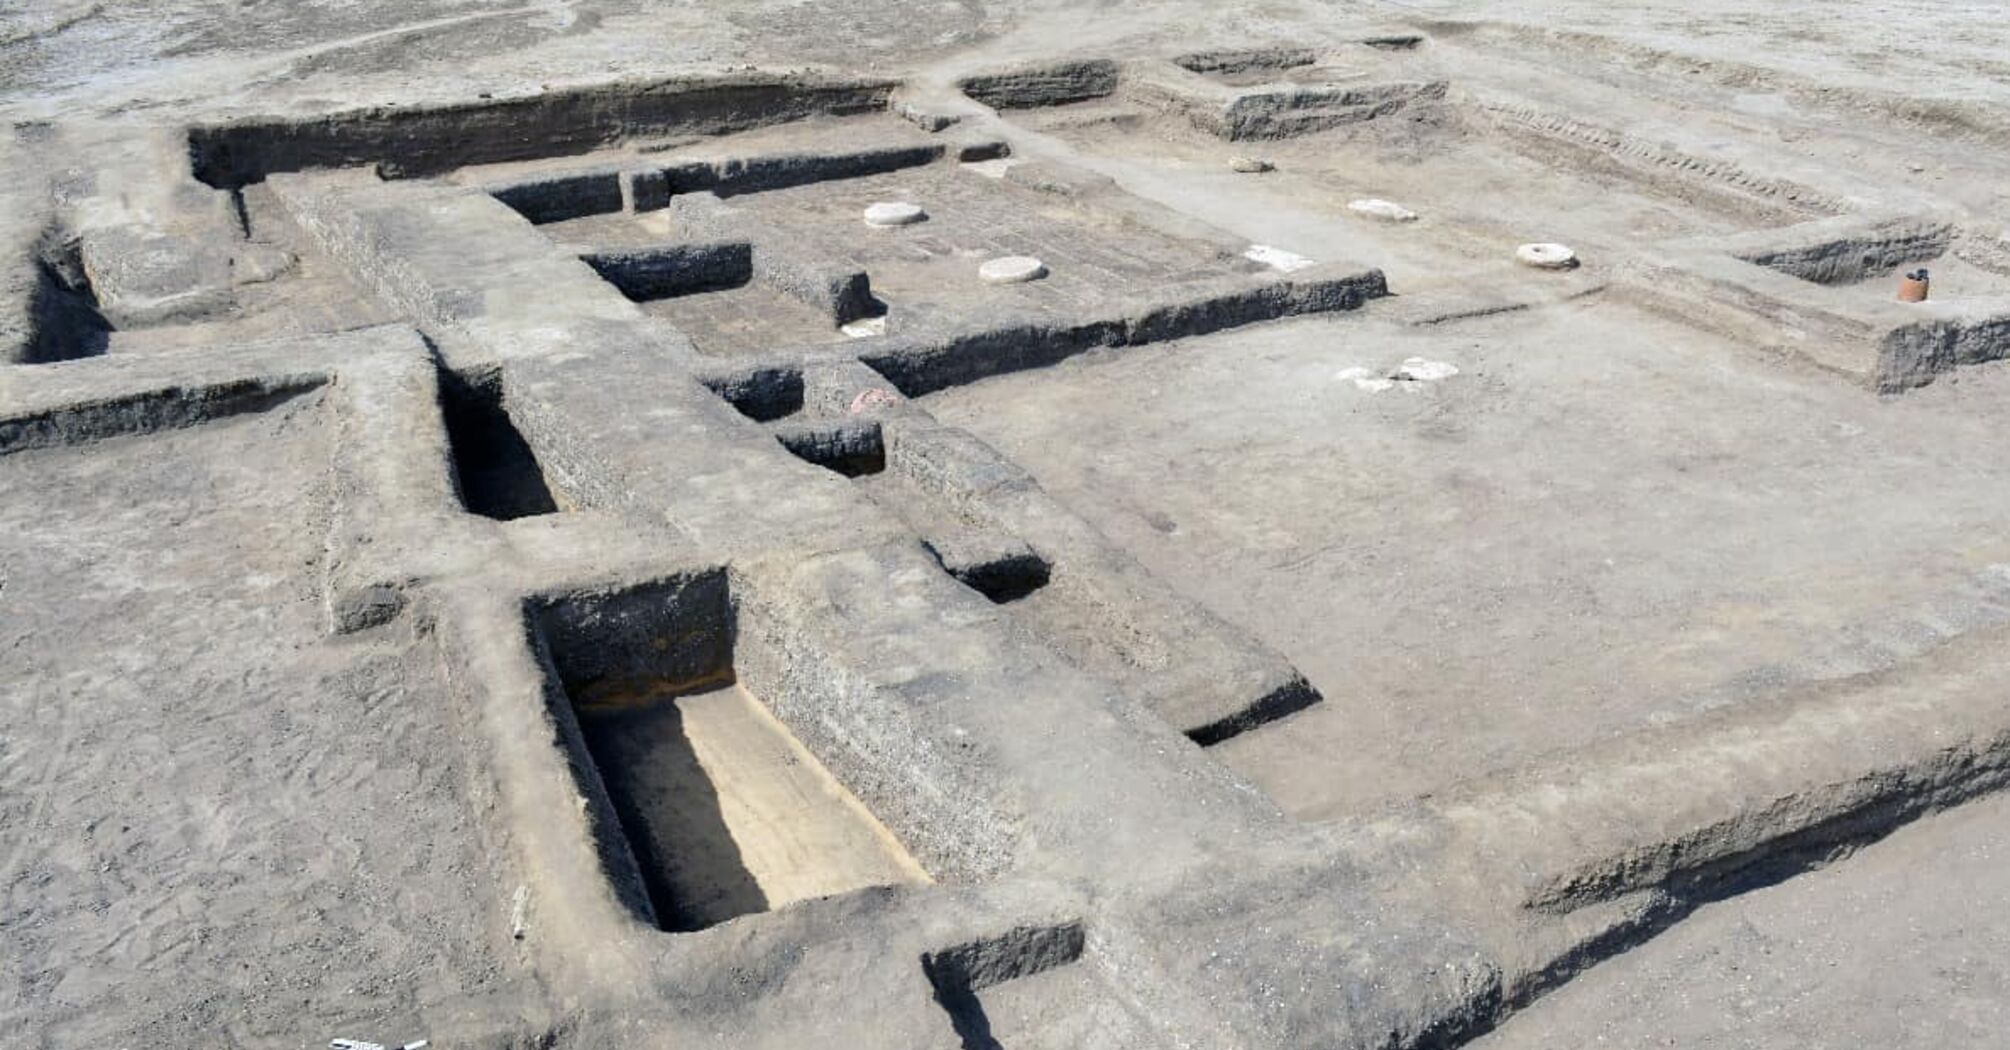 Археологи обнаружили в пустыне 3500-летний египетский королевский дом (фото)